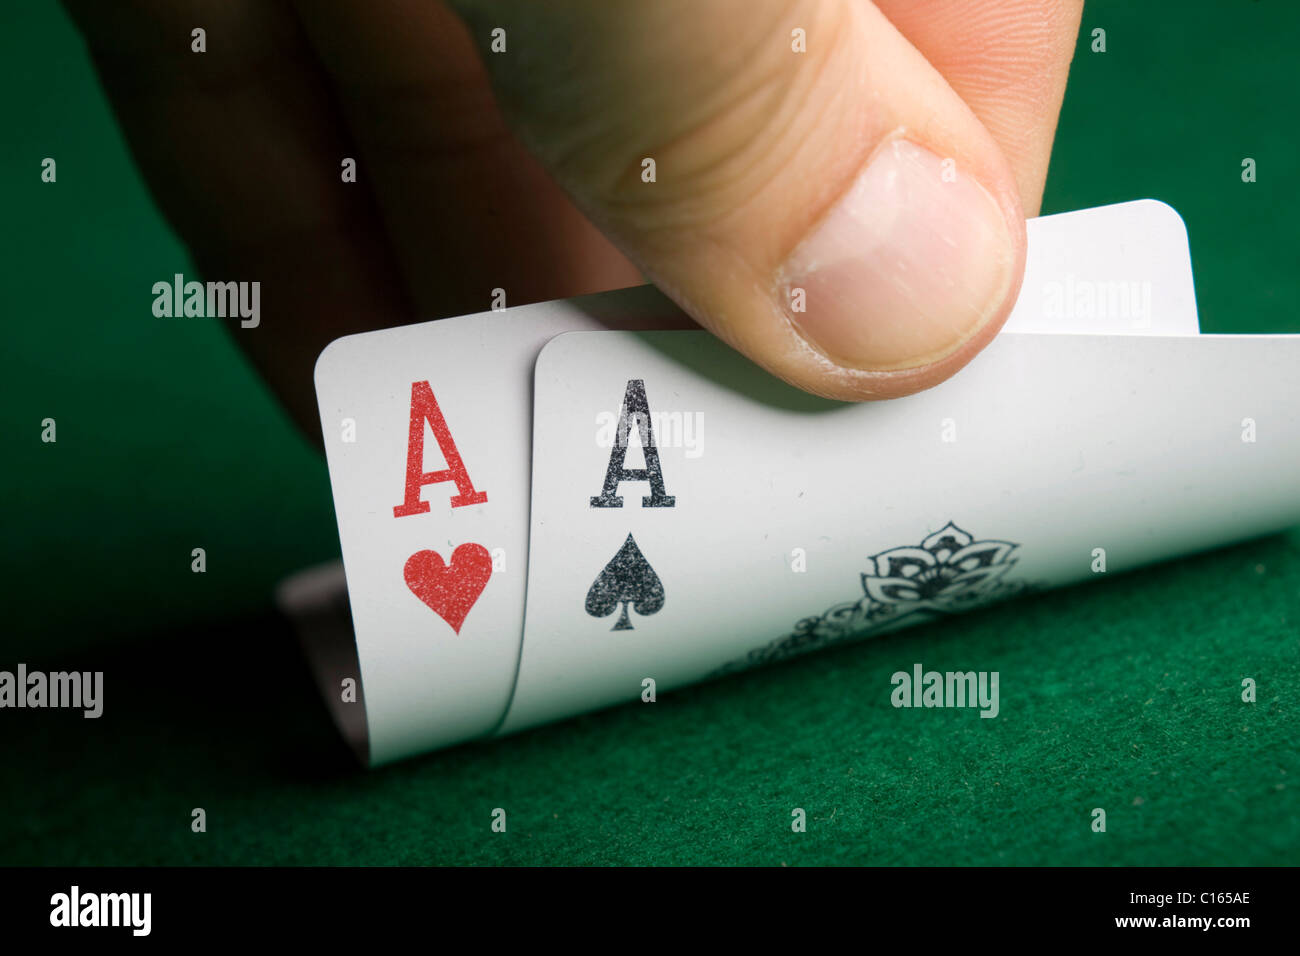 Mano levantando el borde de dos cartas, el as de corazones y el as de tréboles, en un juego de poker Foto de stock